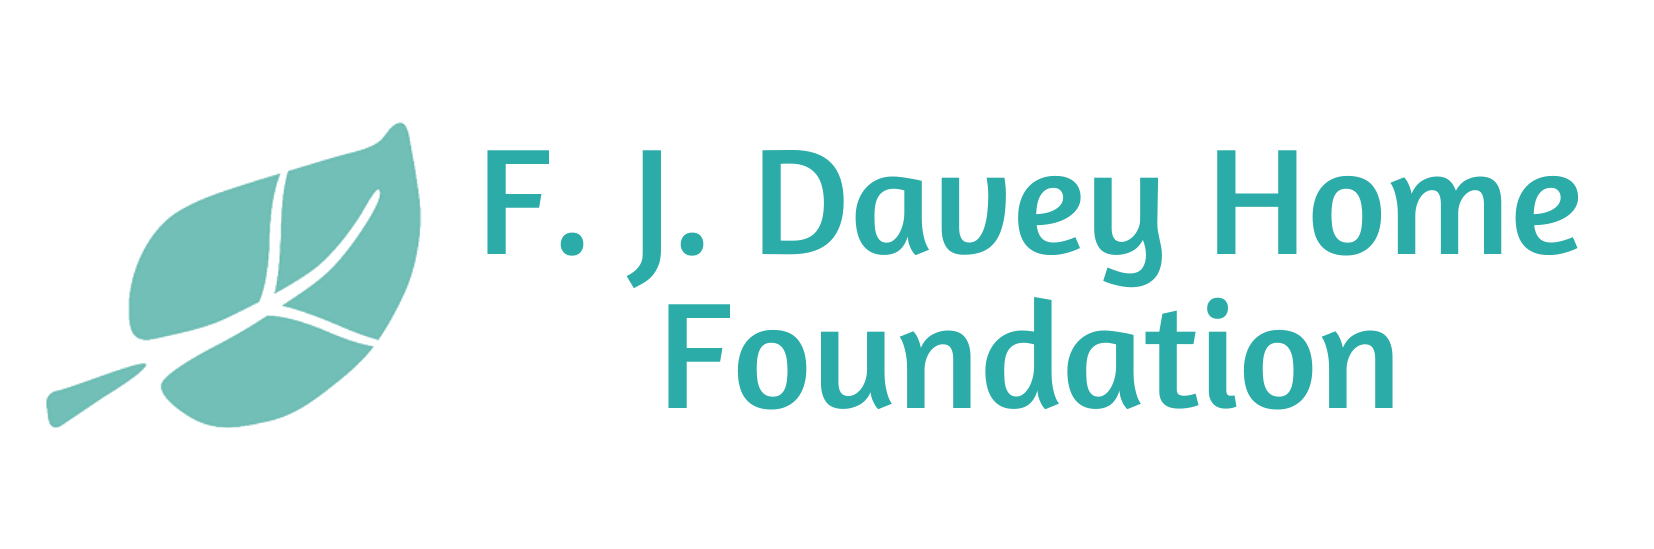 F. J. Davey Home Foundation